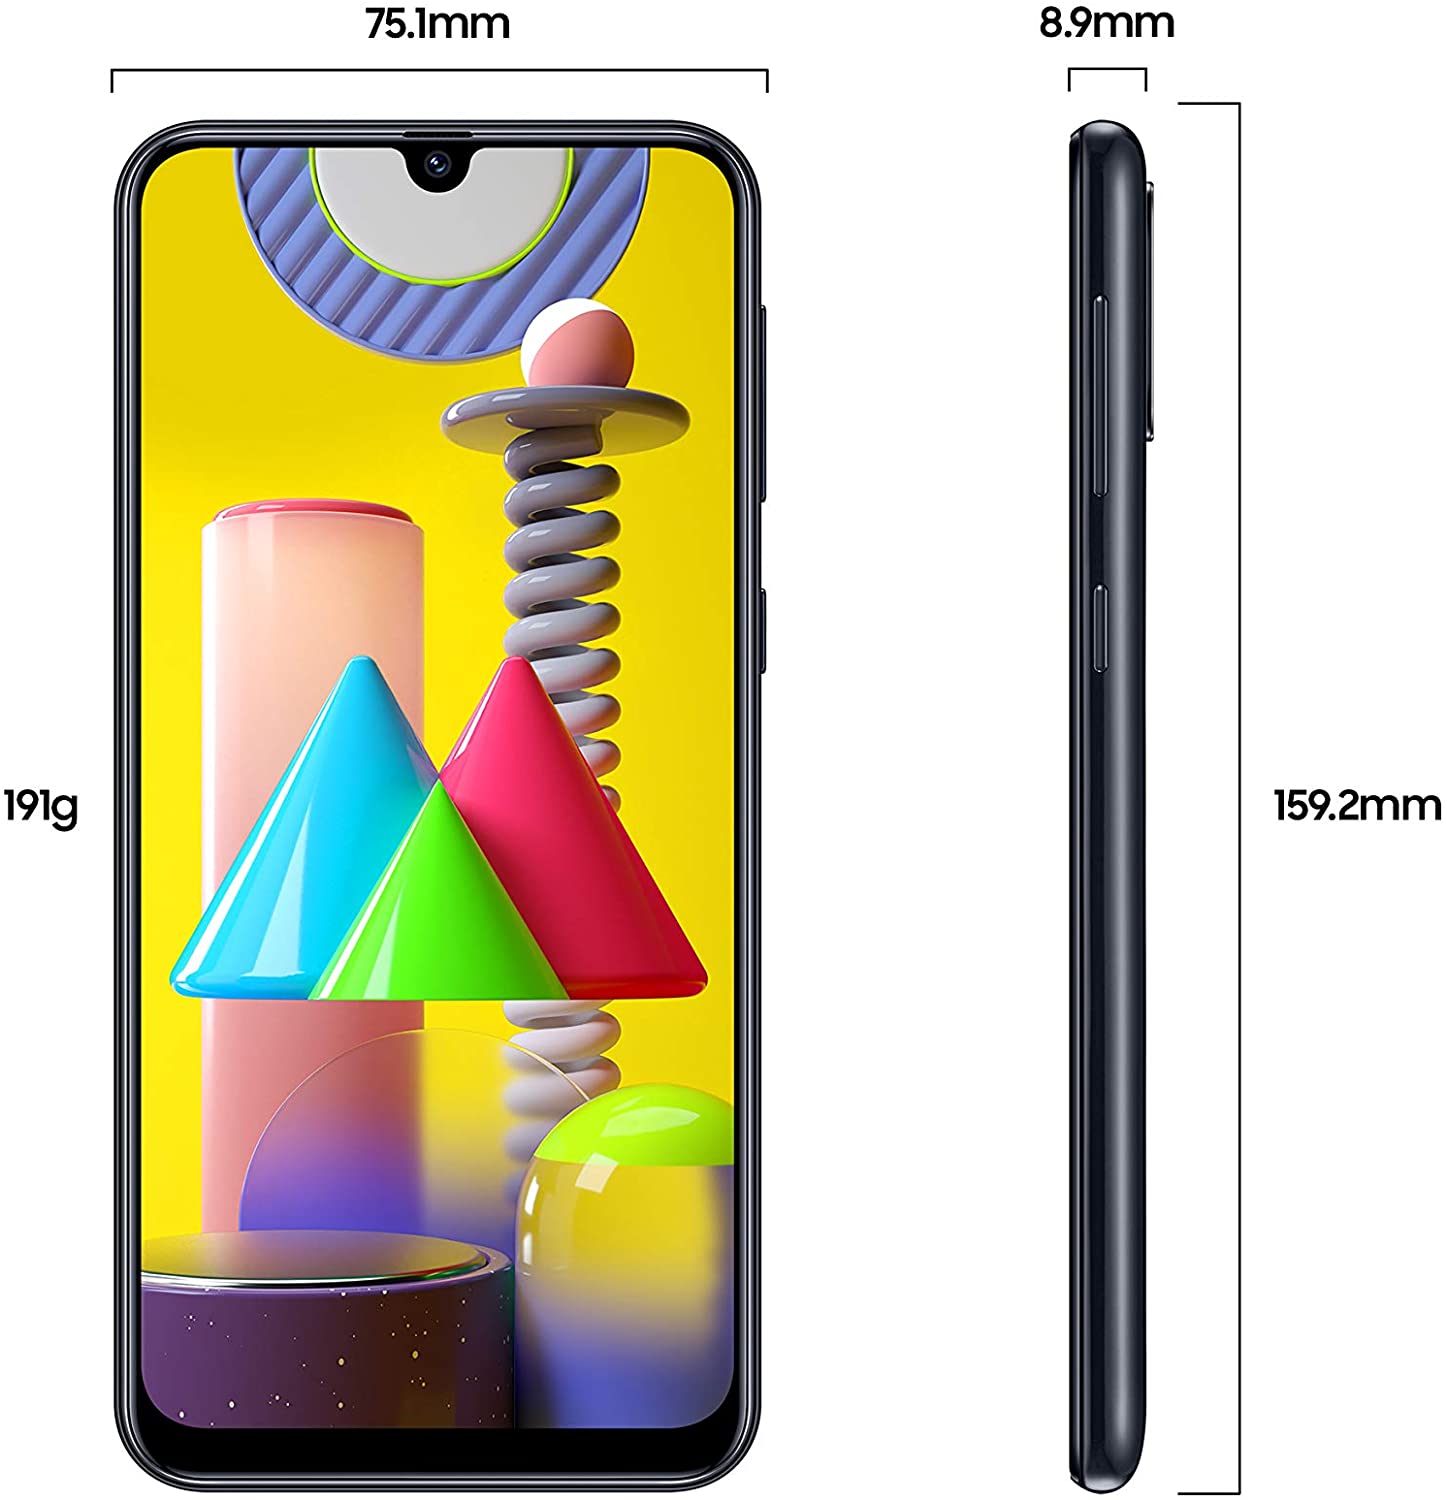 Samsung Galaxy M31 Dual SIM, 128GB, 6GB RAM, 4G LTE, UAE Version - Black - 1 year local brand warra